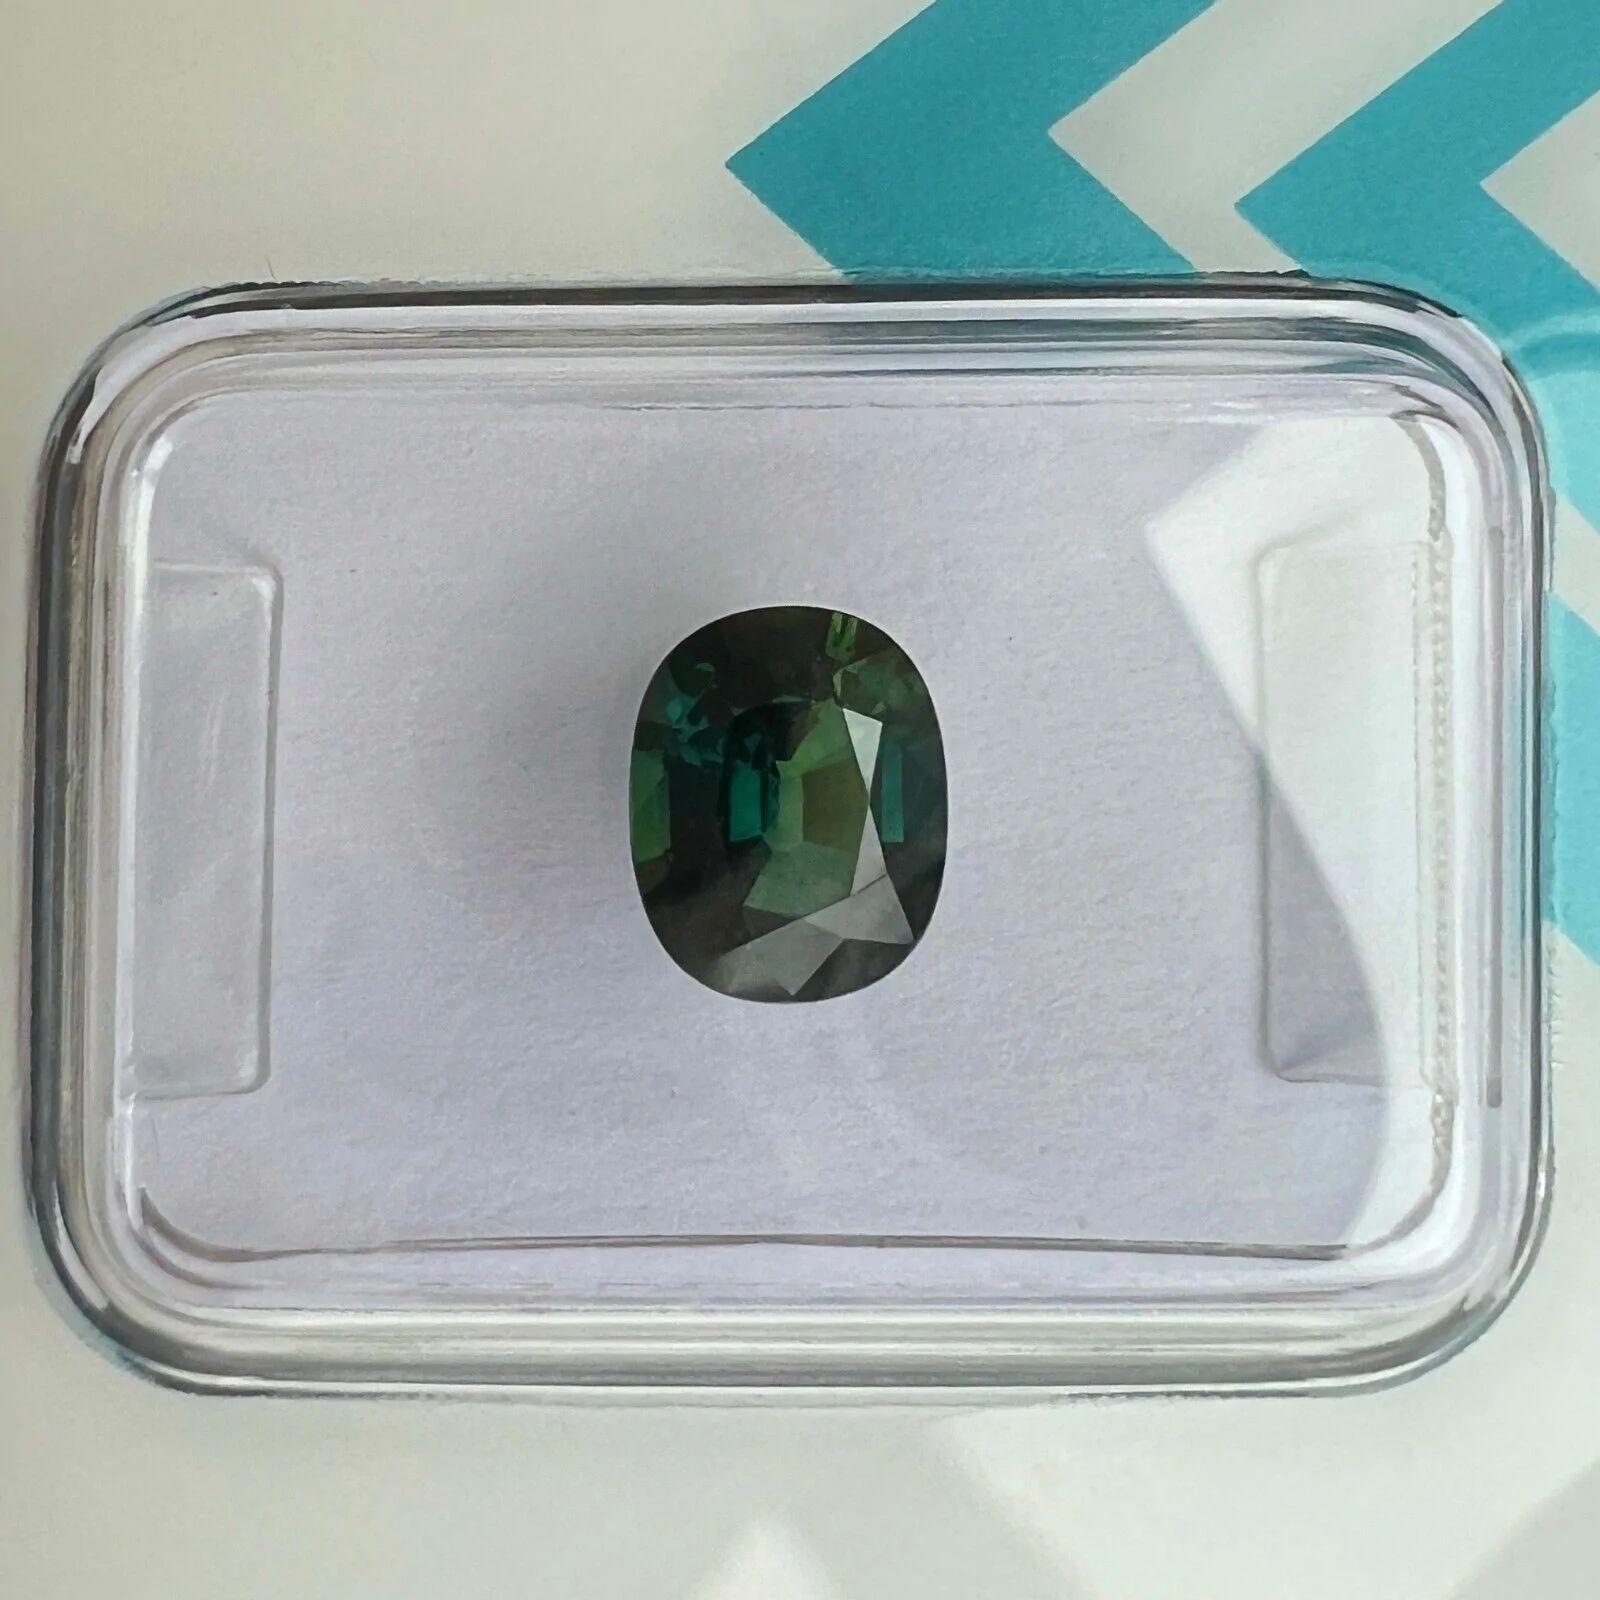 1,32ct australischer tiefgrüner blauer Teal Sapphire No Heat Oval Cut IGI zertifiziert

Feiner tief grünblauer unbehandelter 'Teal' Saphir in IGI Blister.
1,32 Karat mit einer schönen blaugrünen Farbe, einem ausgezeichneten ovalen Schliff und sehr